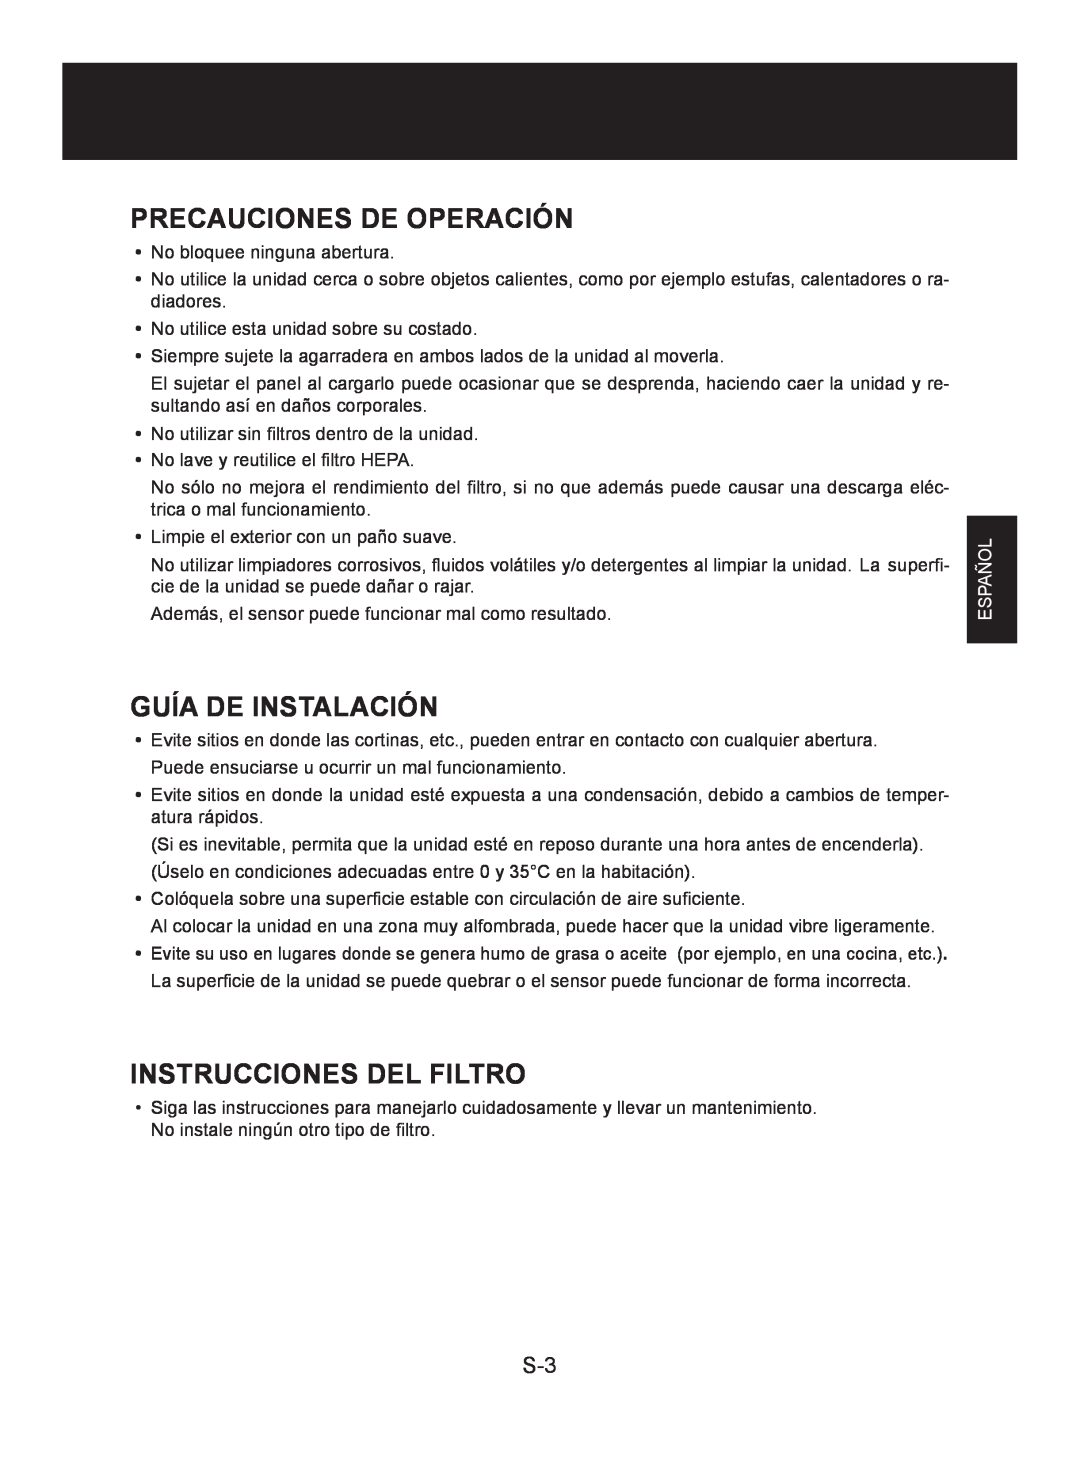 Sharp FP-A60U, FP-A80UW Precauciones De Operación, Guía De Instalación, Instrucciones Del Filtro, Español 